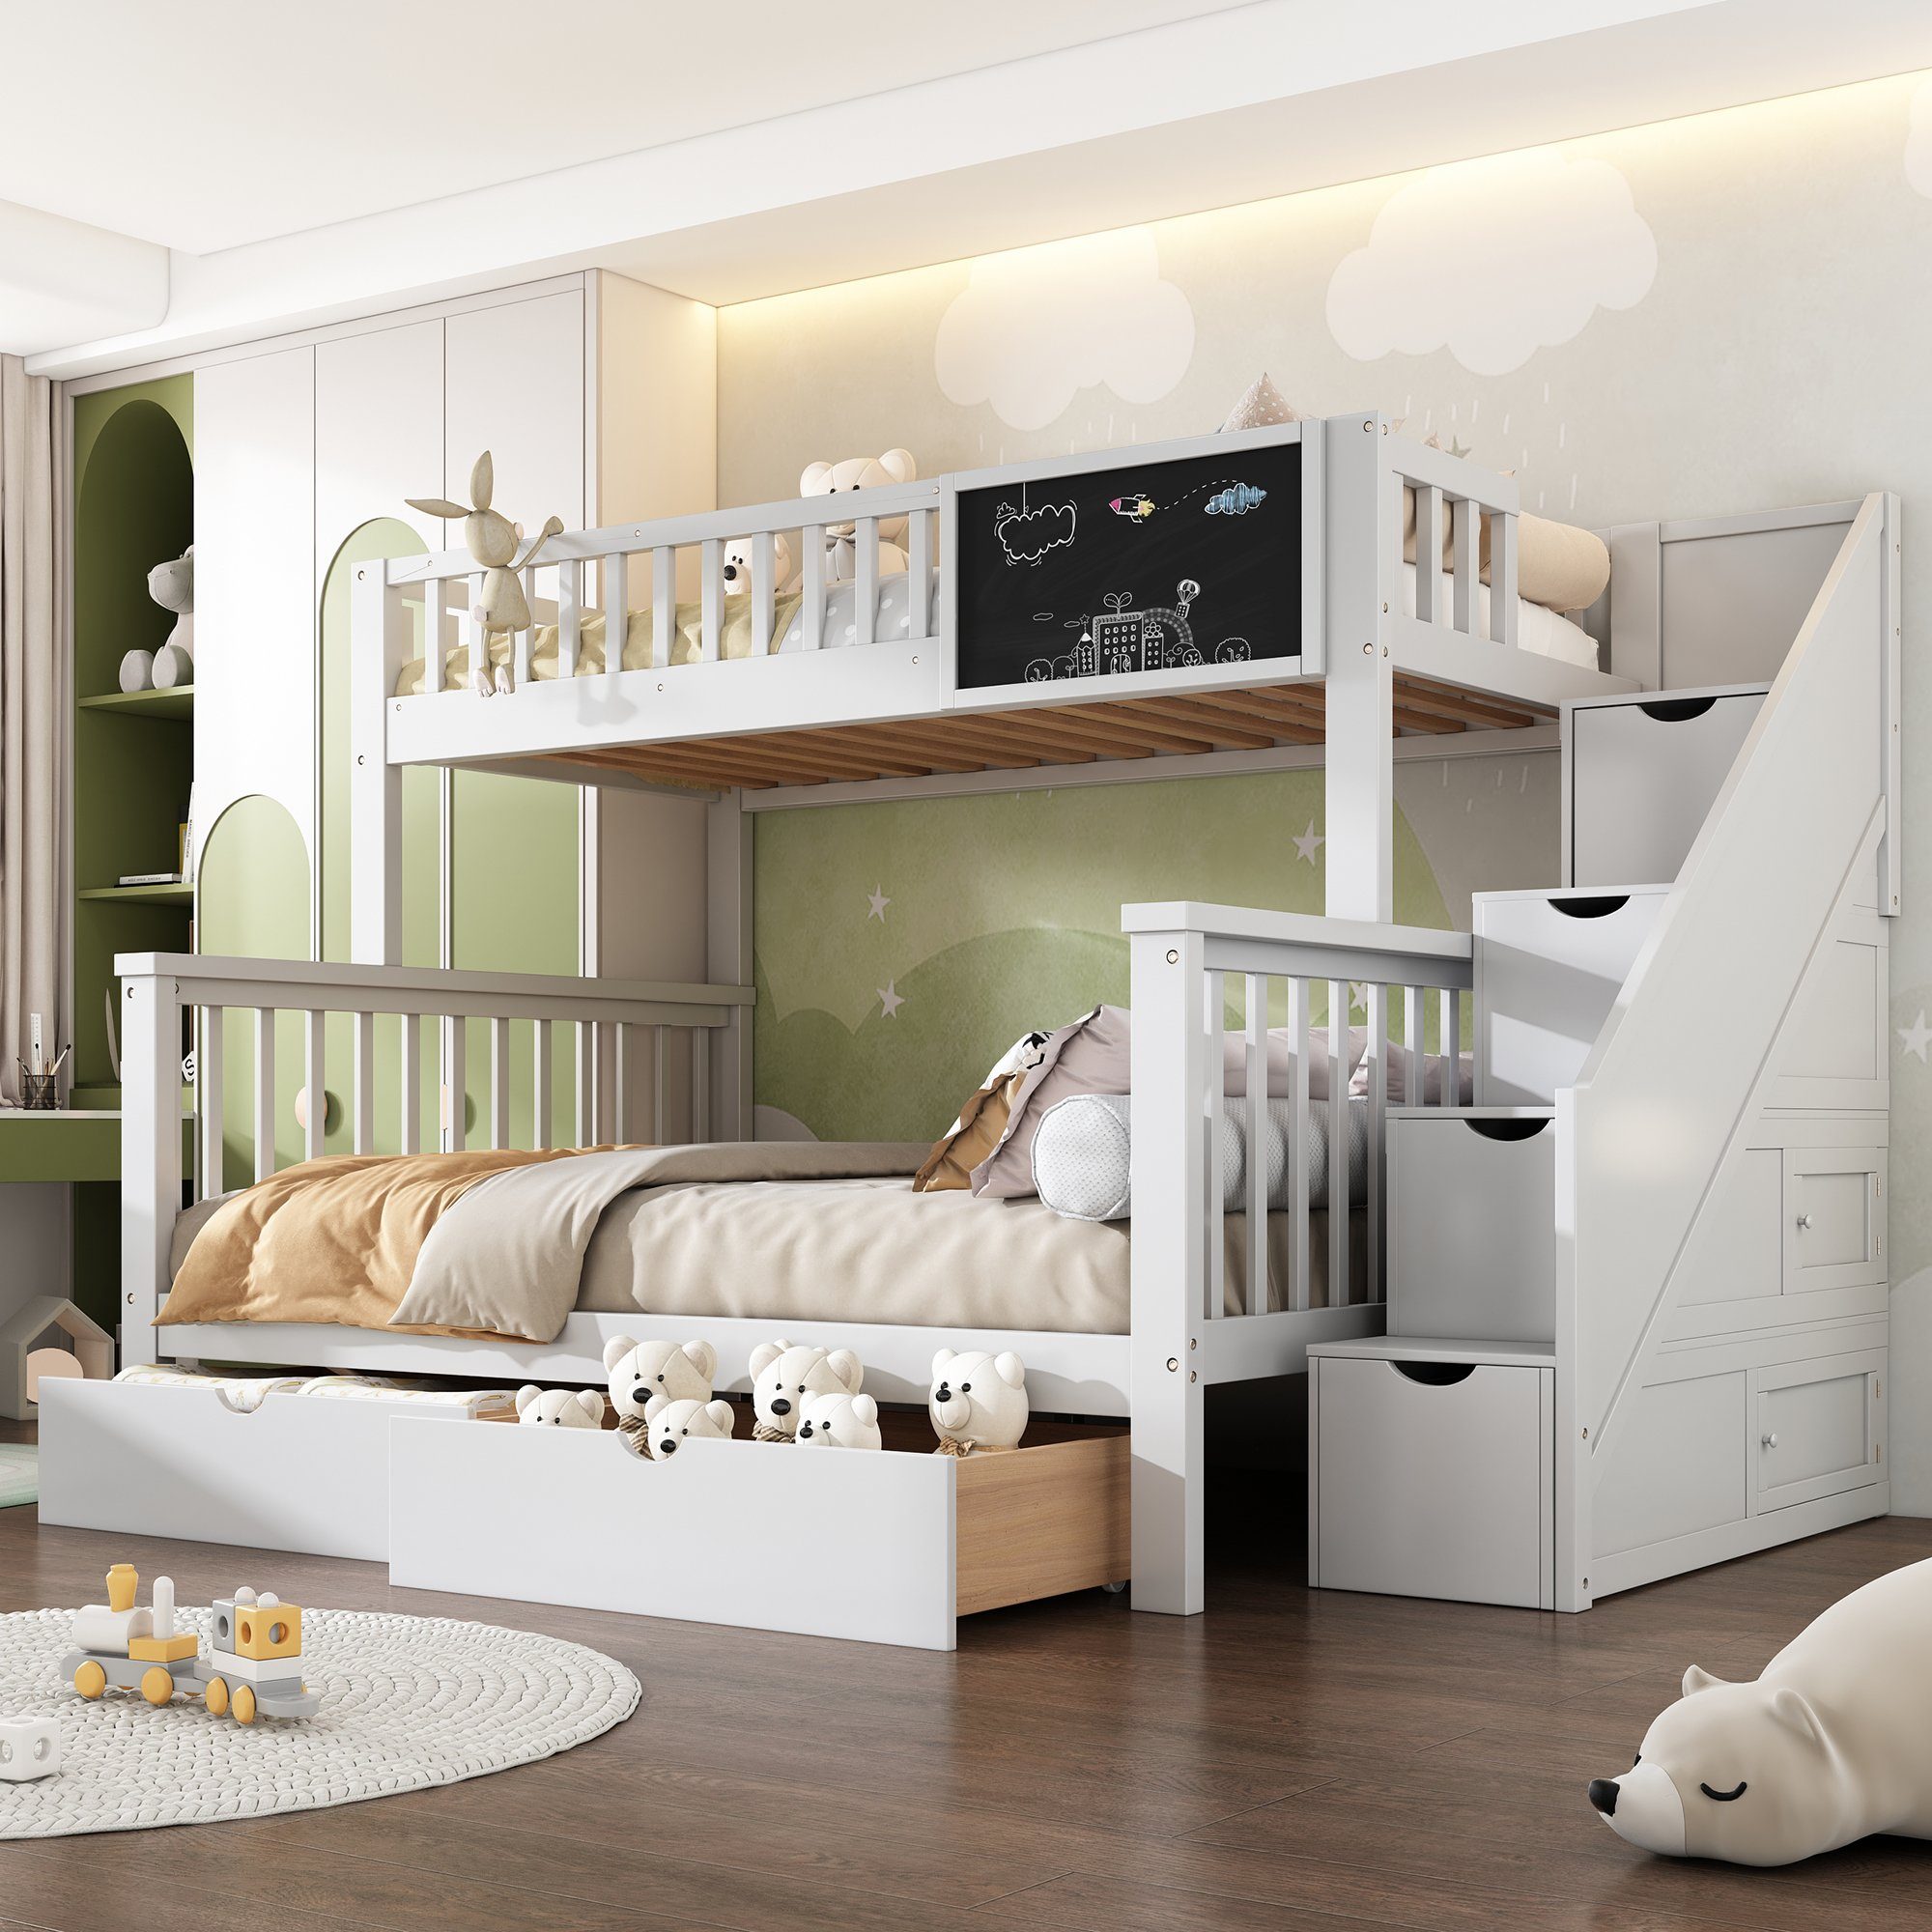 Flieks Etagenbett, Kinderbett mit Tafel Treppe Schubladen 90x200cm+140x200cm weiß